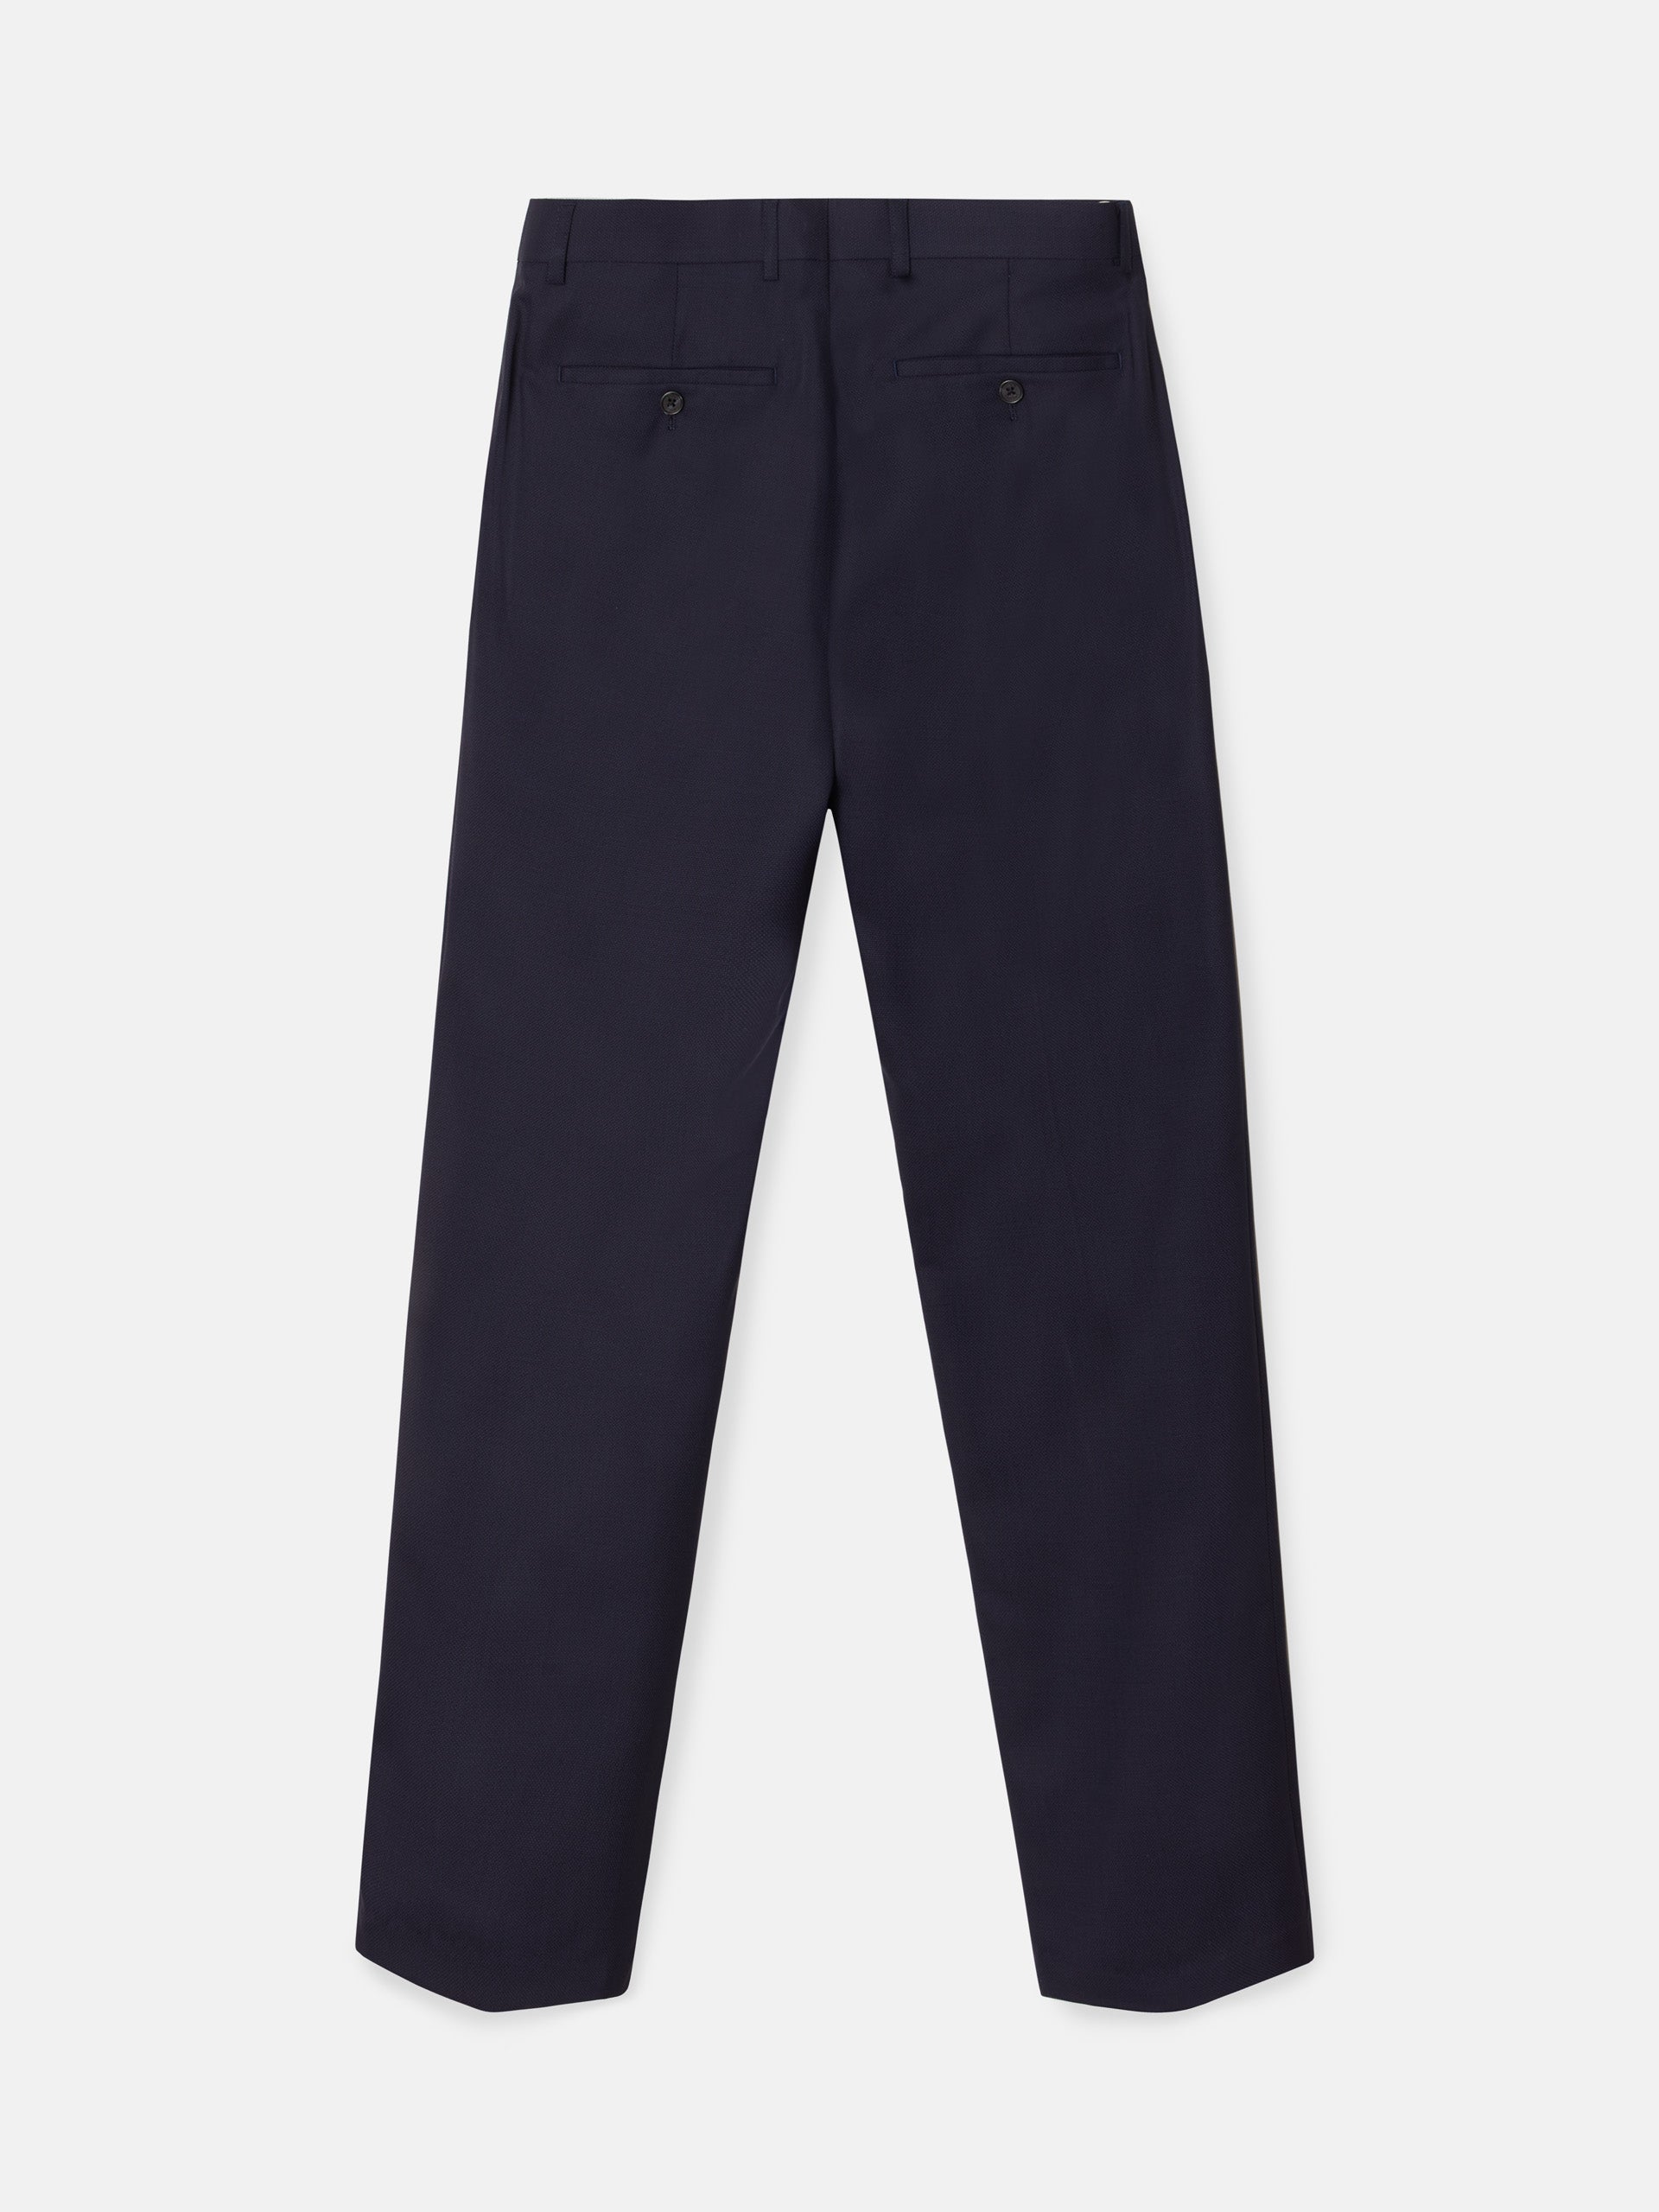 Navy blue structured suit pants